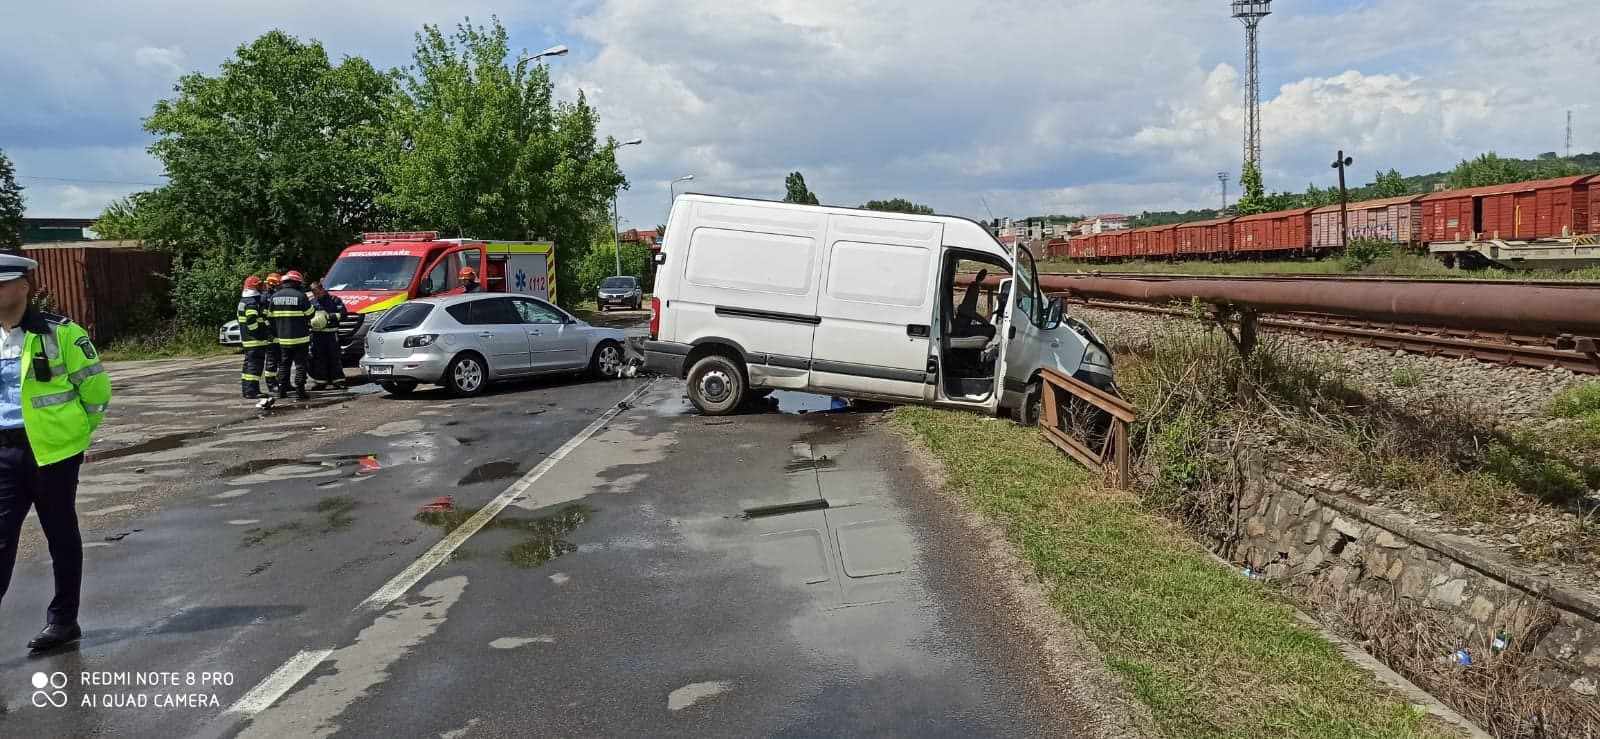 FOTO: Accident pe strada Căii Ferate din Oradea 28.05.2020